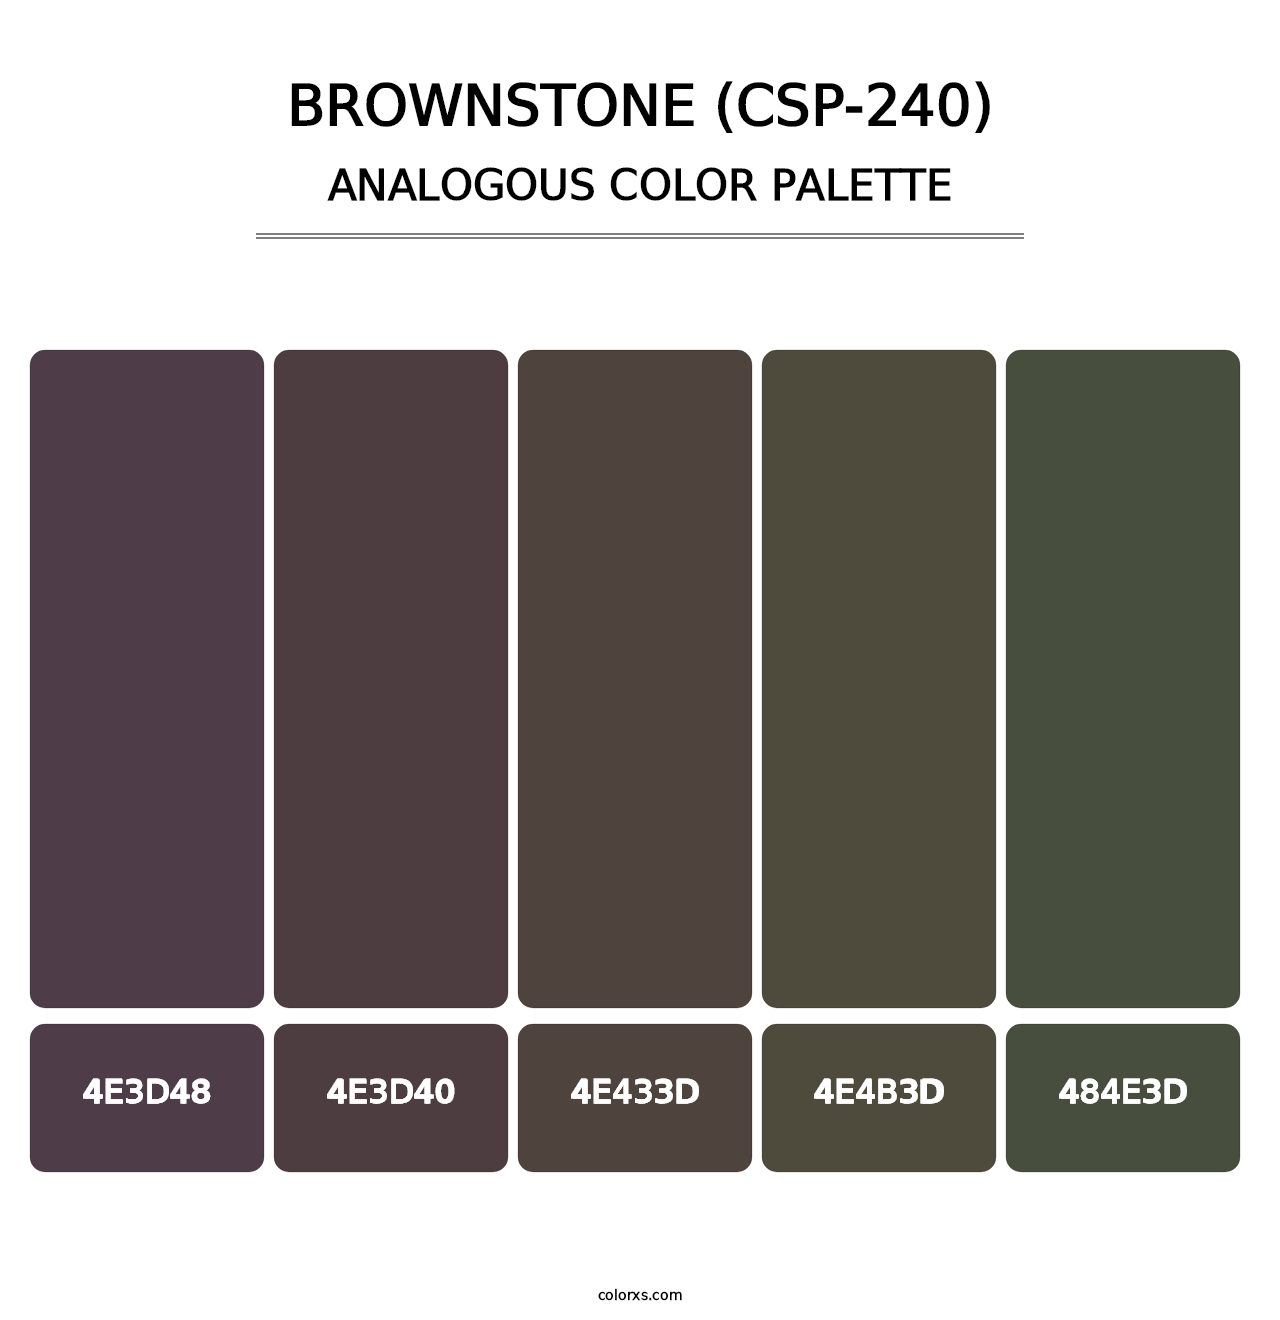 Brownstone (CSP-240) - Analogous Color Palette